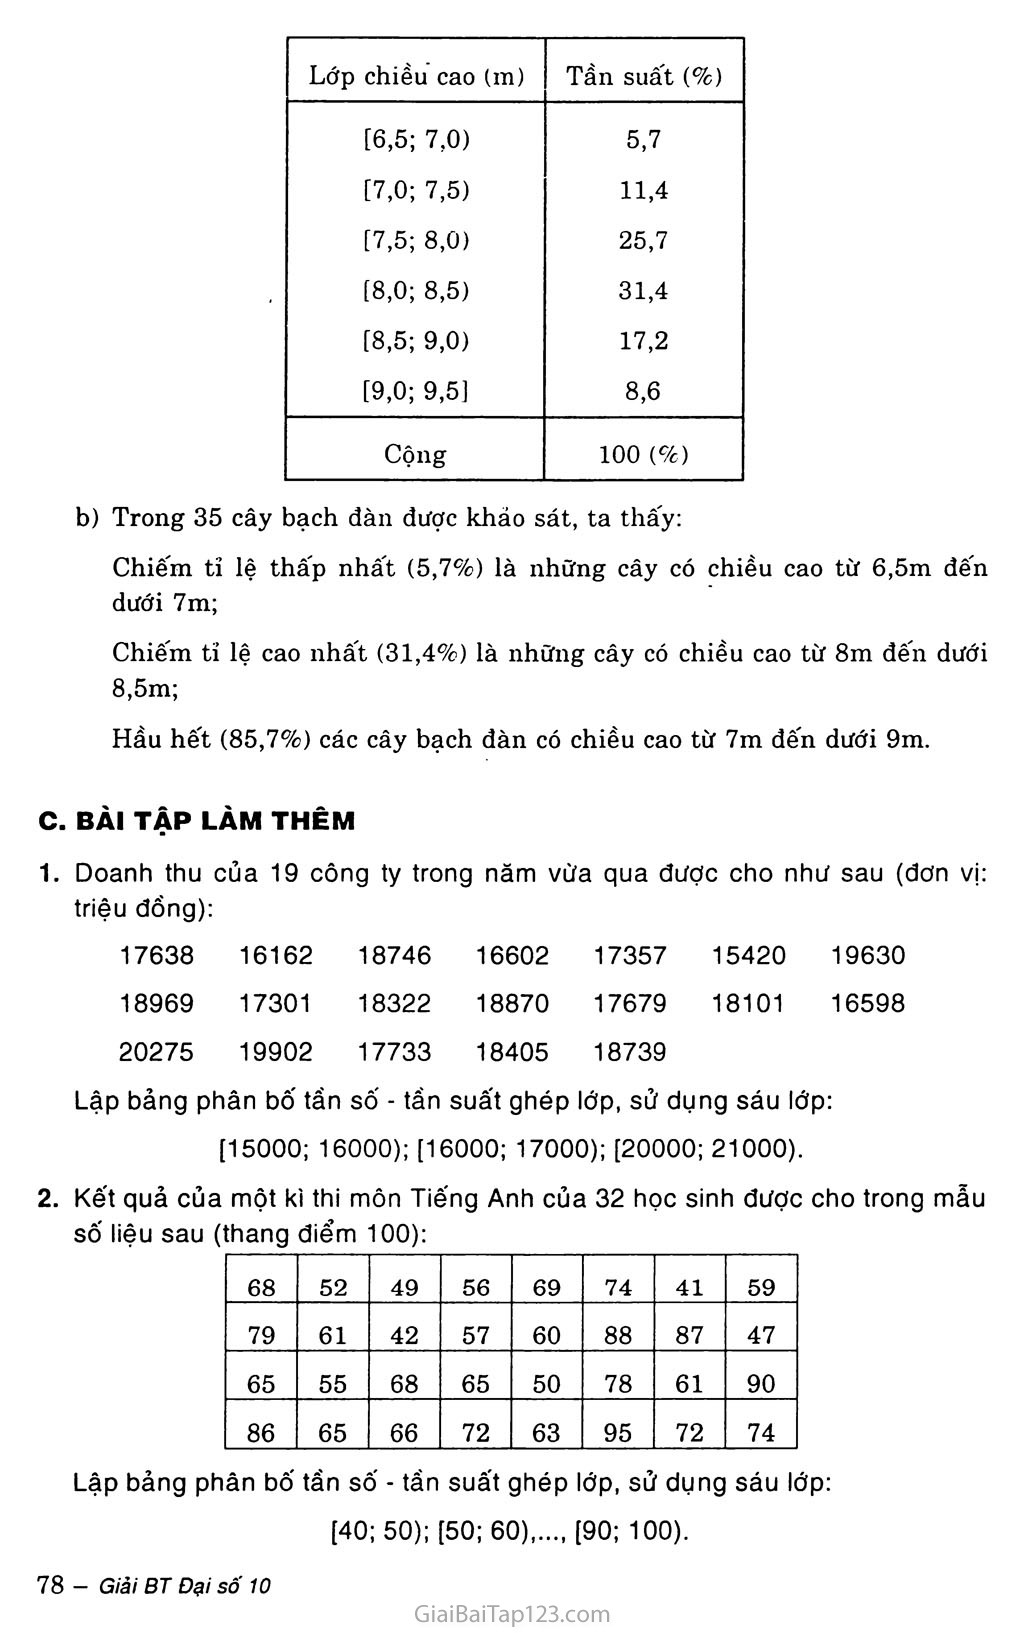 Bài 1. Bảng phân bố tần số và tần suất trang 4